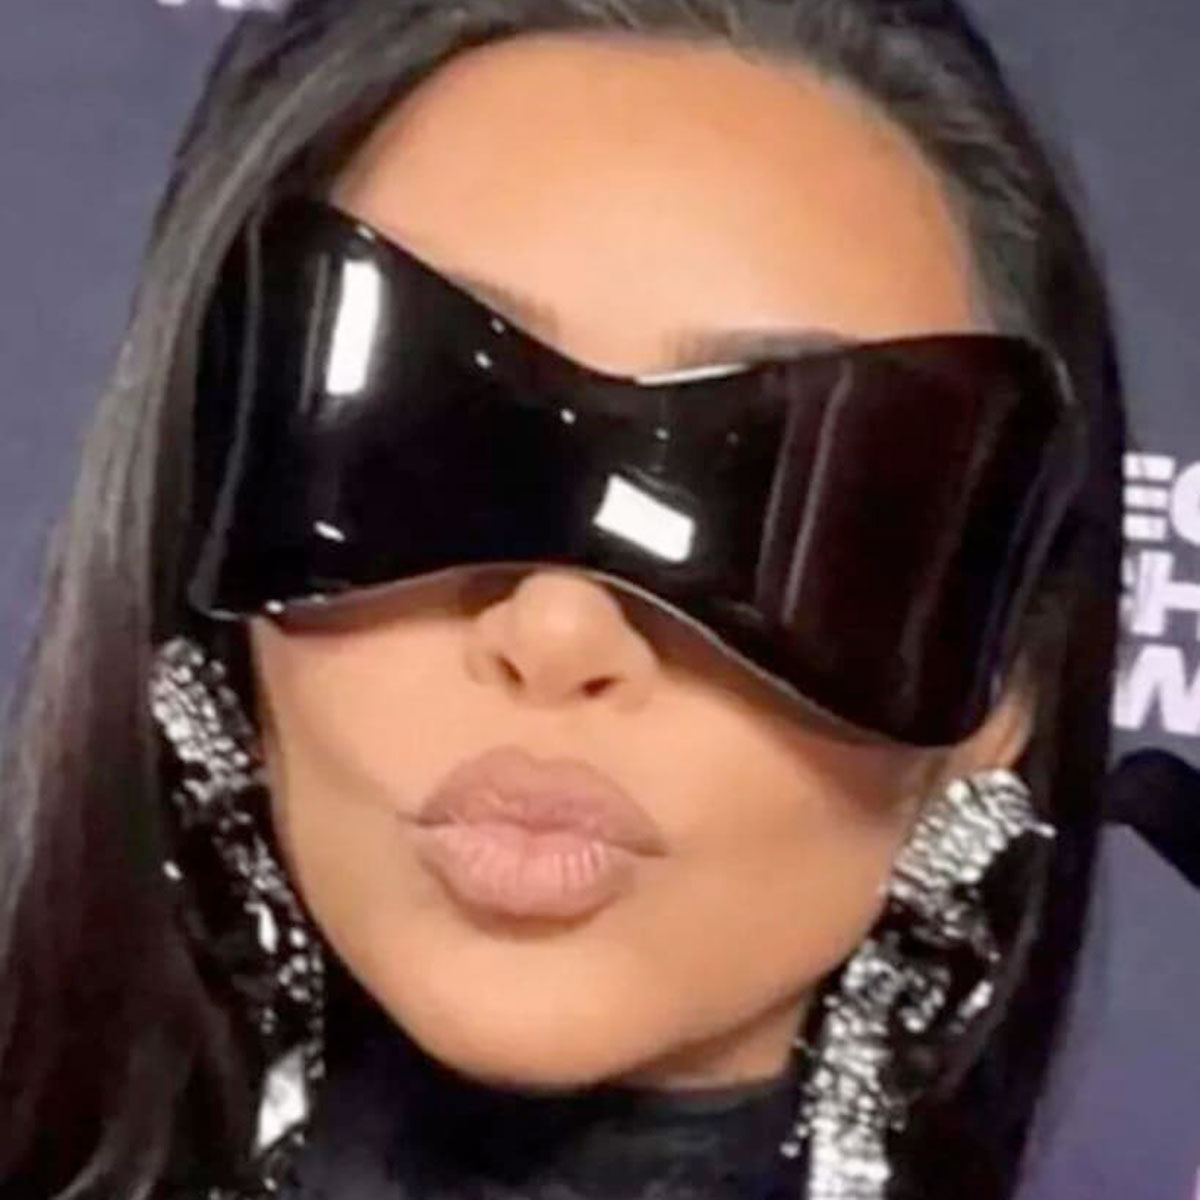 Sunglasses Mask Wrap Silver Eyewear for Women